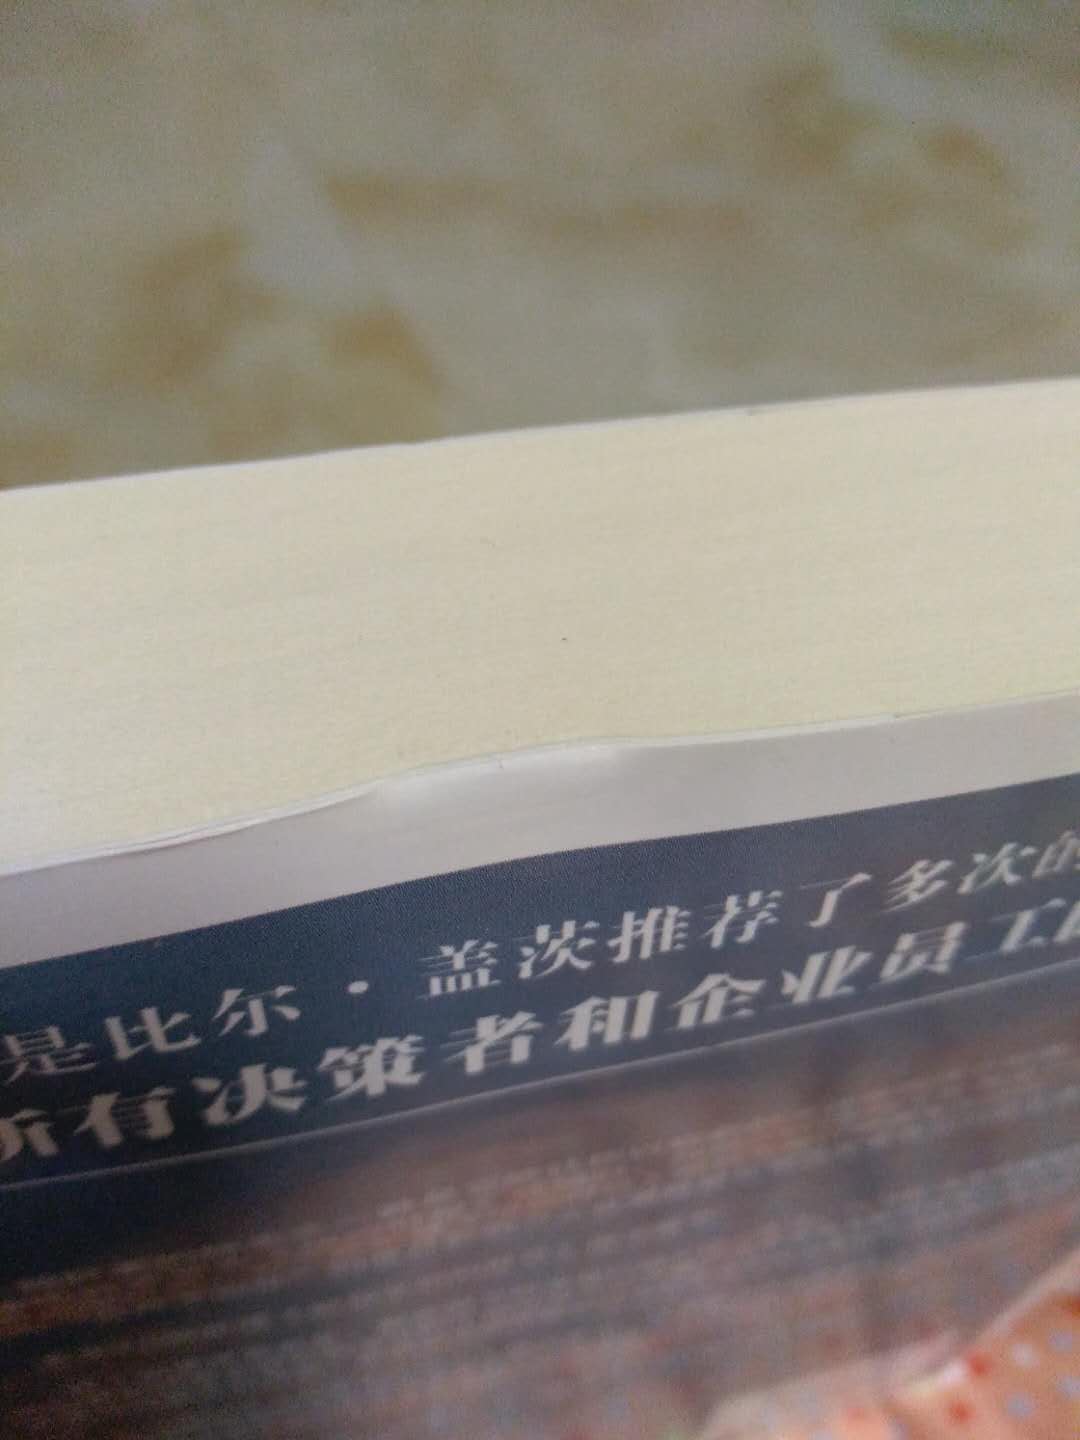 书不错，字体清晰。但是包装不够好，运送过程中书的背面被压出了明显的痕迹，凹了进去，估计是恢复不了平面了。建议下次可以在书的正反面加一层泡沫之类的东西，保护书面。